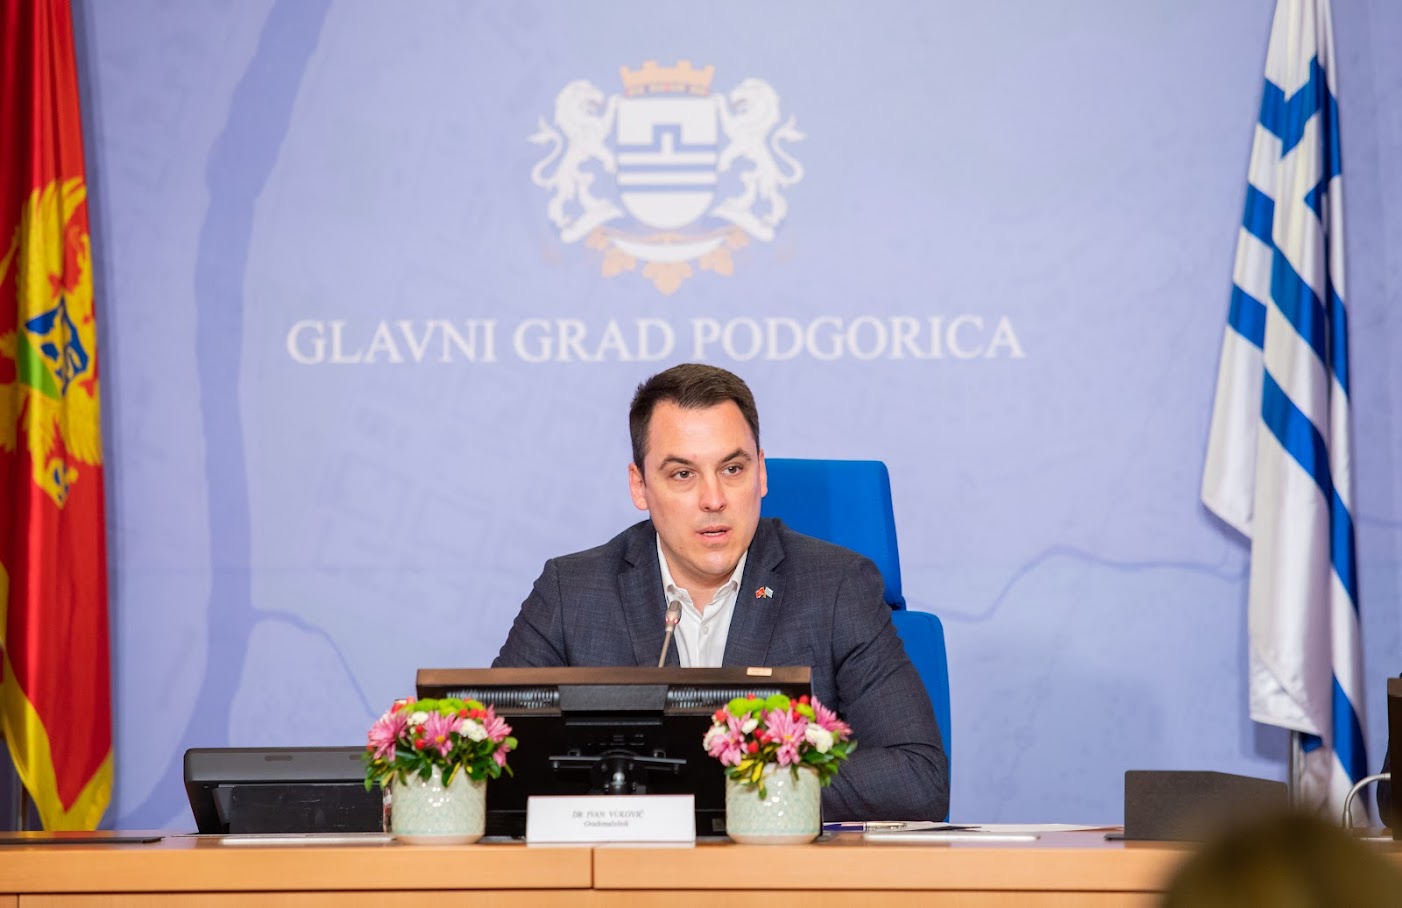 Preko 200.000 eura za razvoj preduzetništva u Podgorici; Vuković najavio novi projekat podrške za centar grada